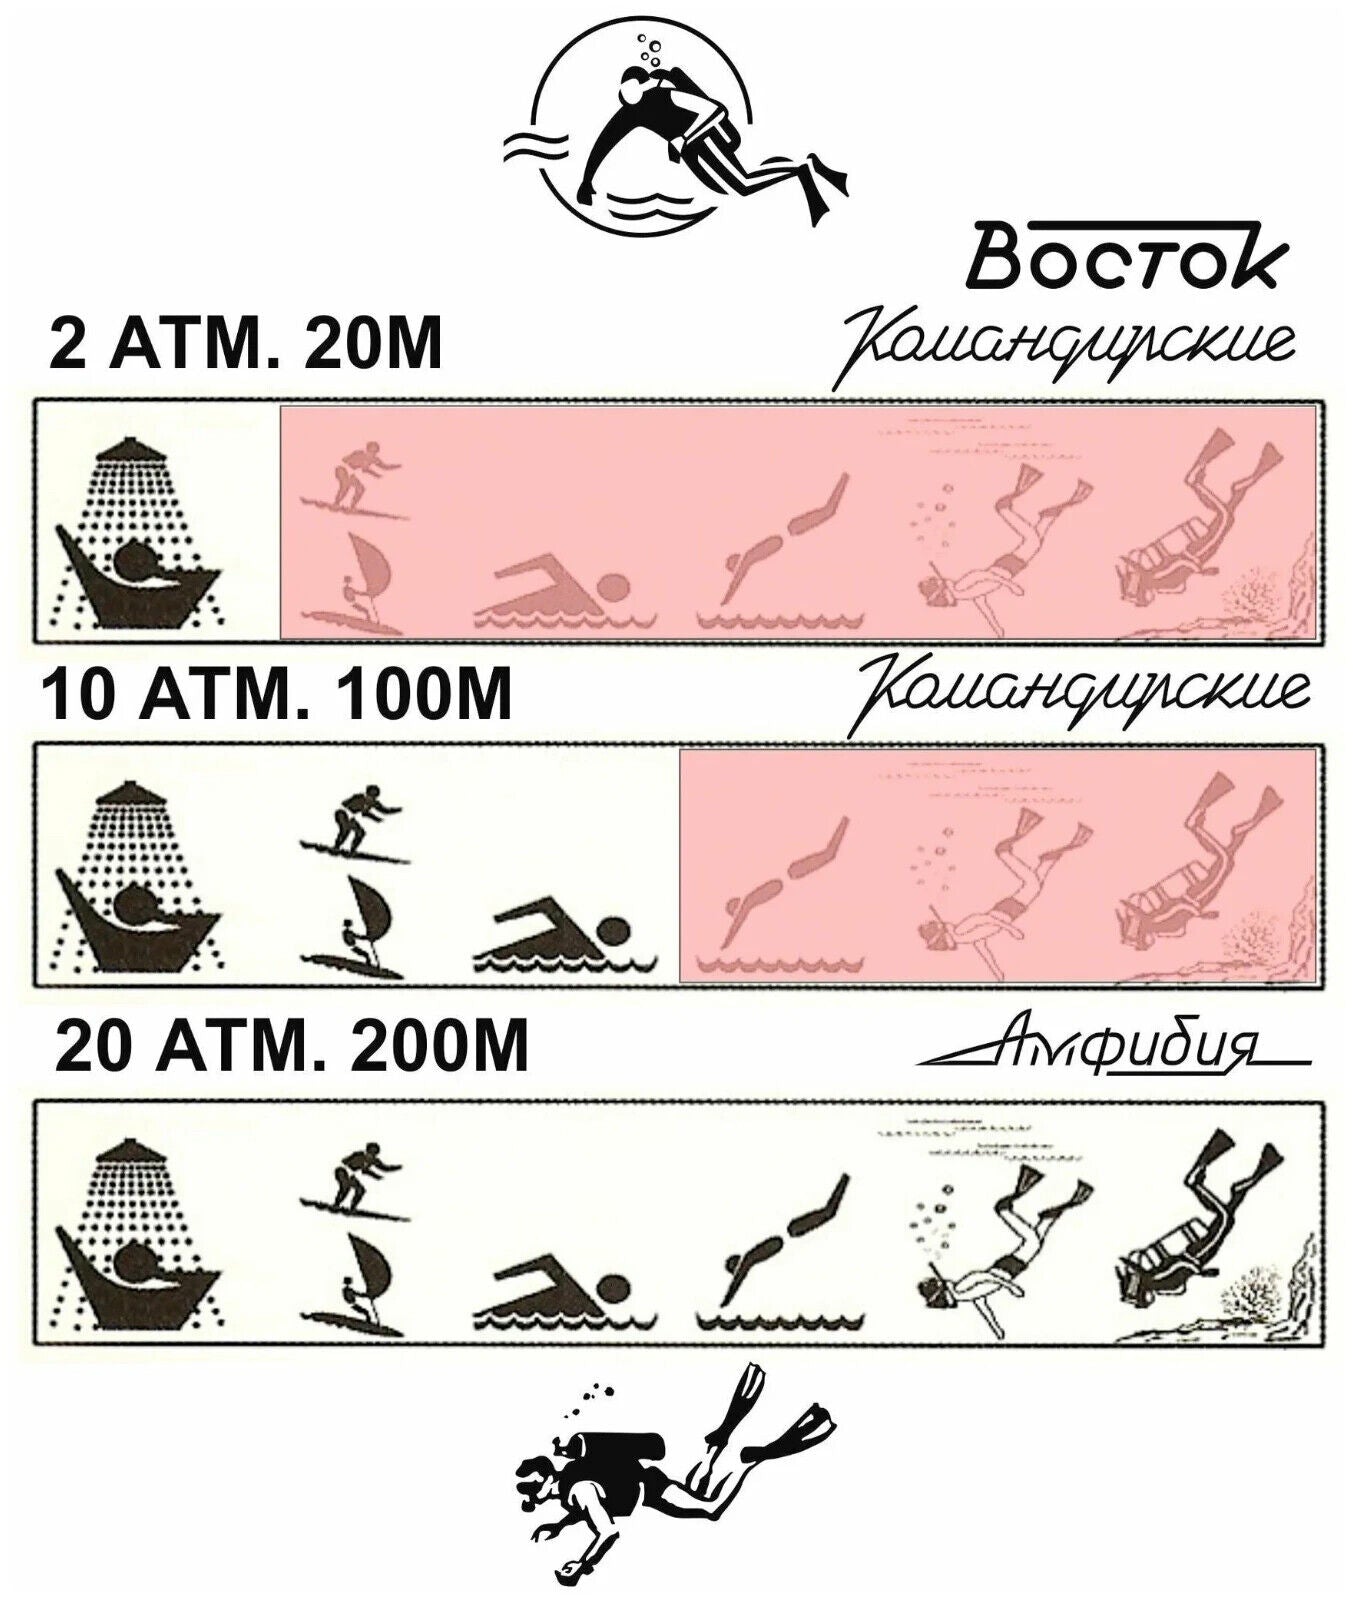 Vostok Amphibia 12073B Self-winding Watch